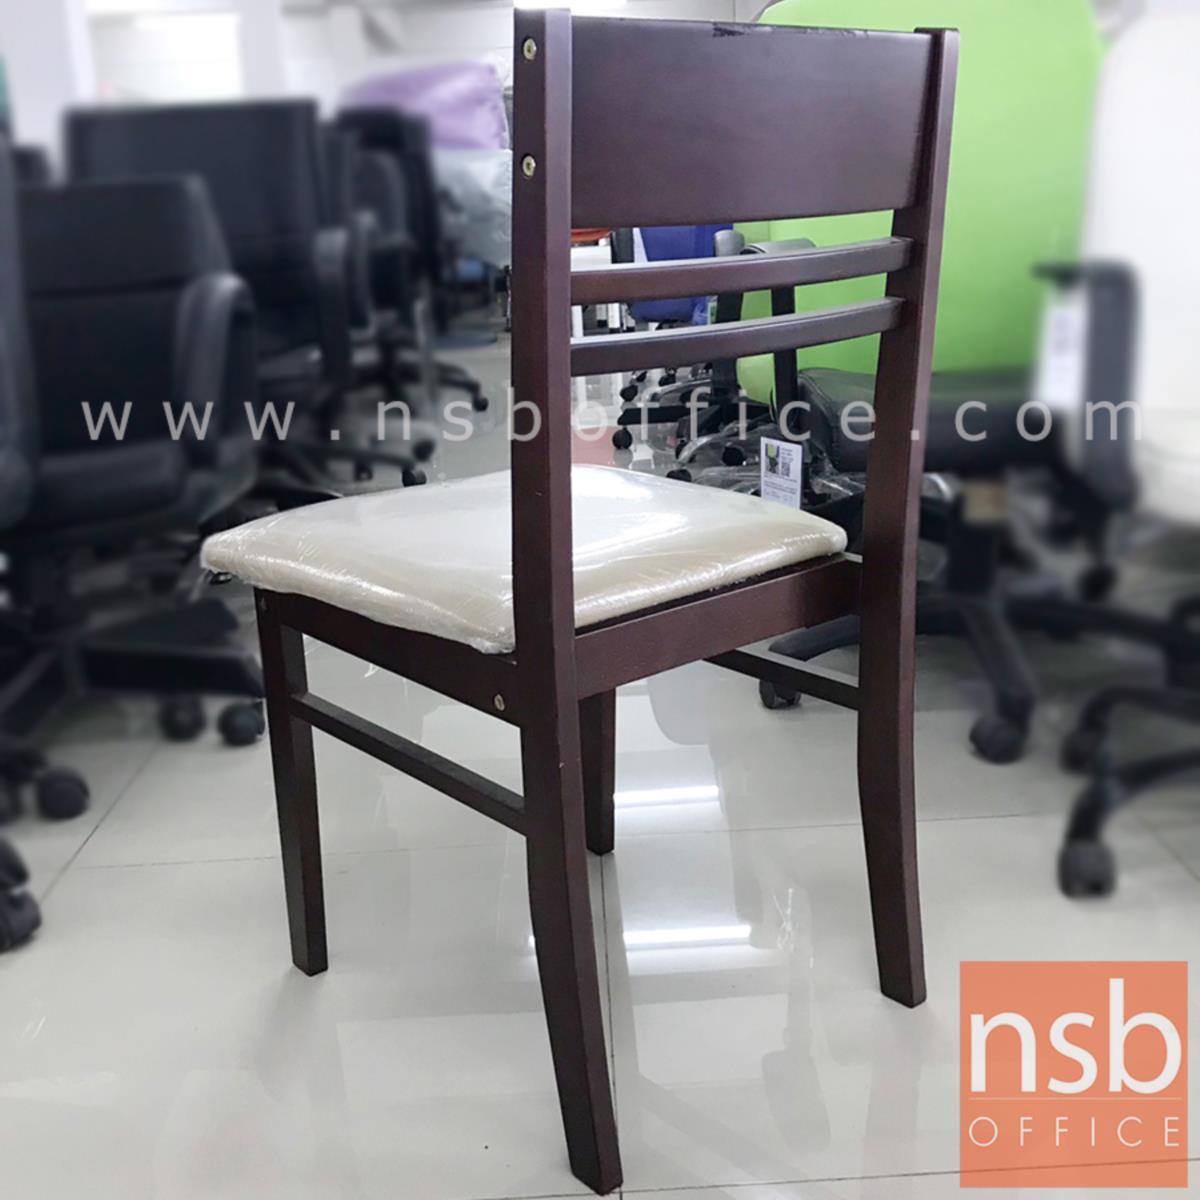 เก้าอี้โมเดิร์นหนังเทียม รุ่น NSB-CHAIR17 ขนาด 44W*79H cm. โครงไม้ (STOCK-1 ตัว)